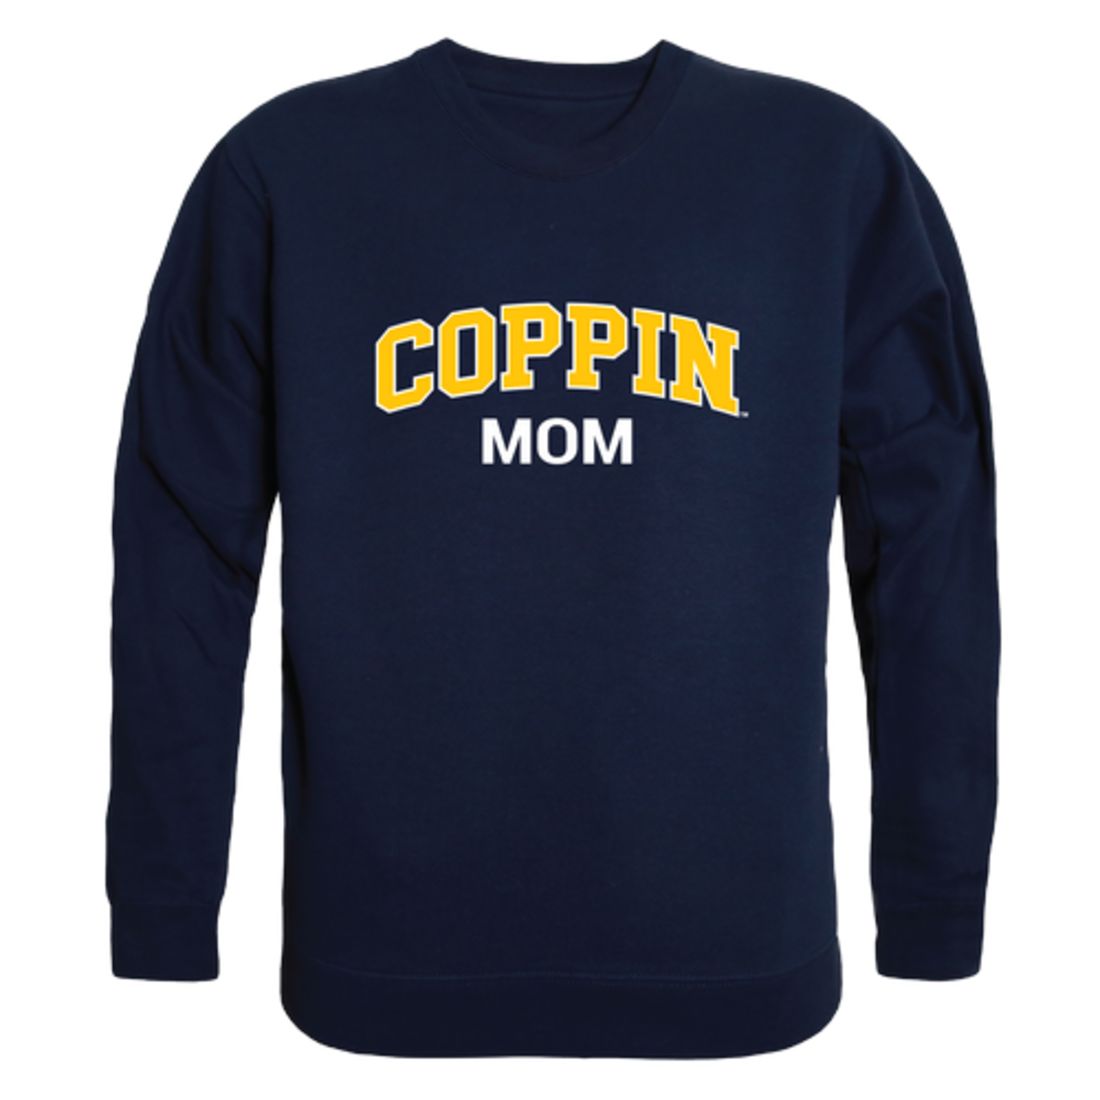 CSU Coppin State University Eagles Mom Fleece Crewneck Pullover Sweatshirt Heather Grey Small-Campus-Wardrobe